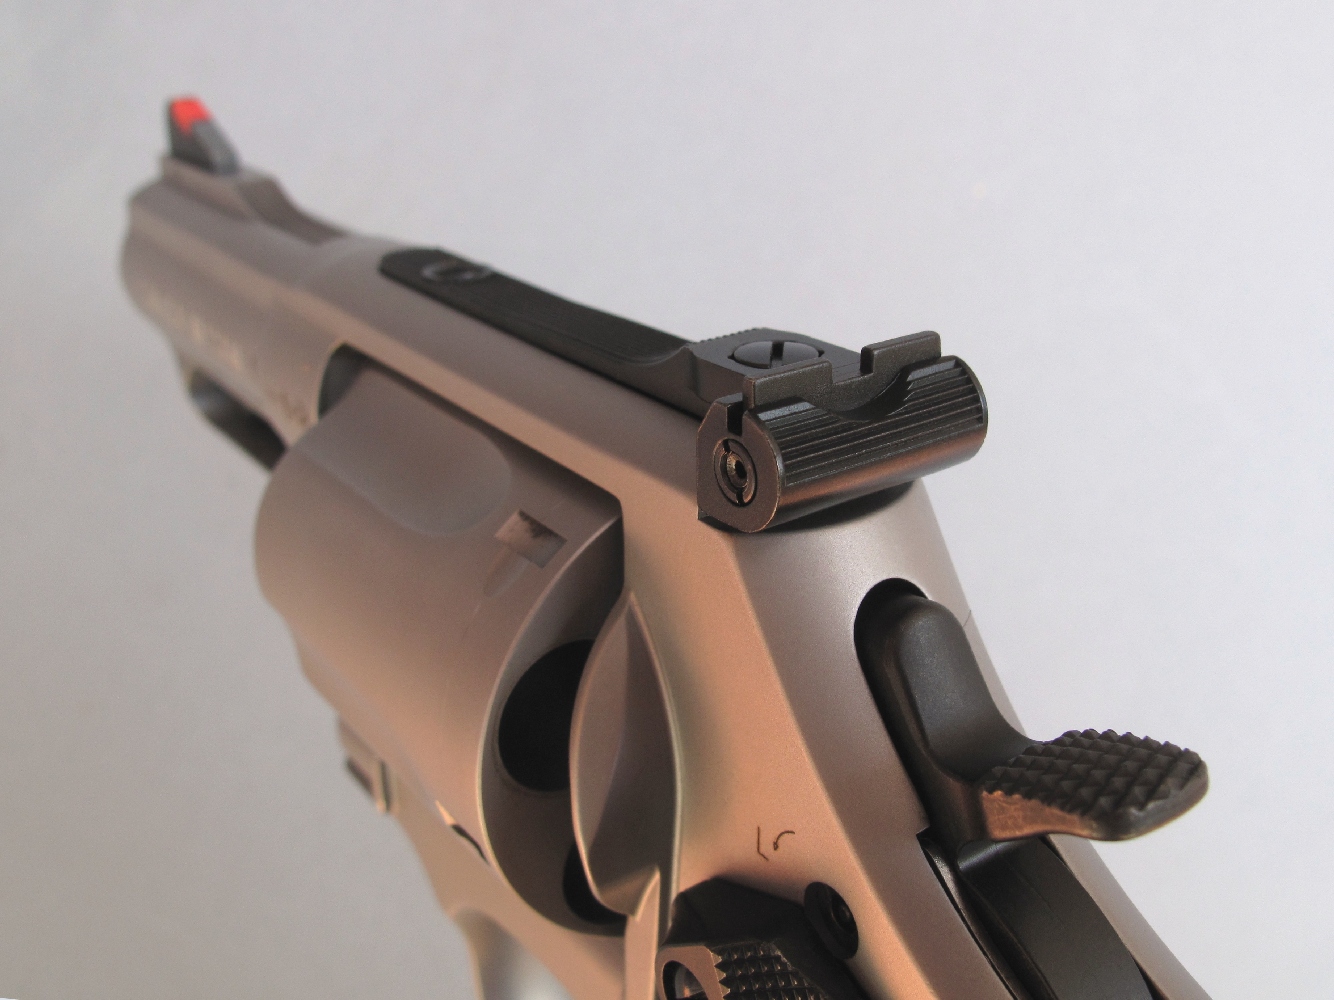 Le S&W modèle 69 dispose d’une hausse en acier, réglable en site et en azimut, un perfectionnement dont les revolvers de défense sont rarement équipés.